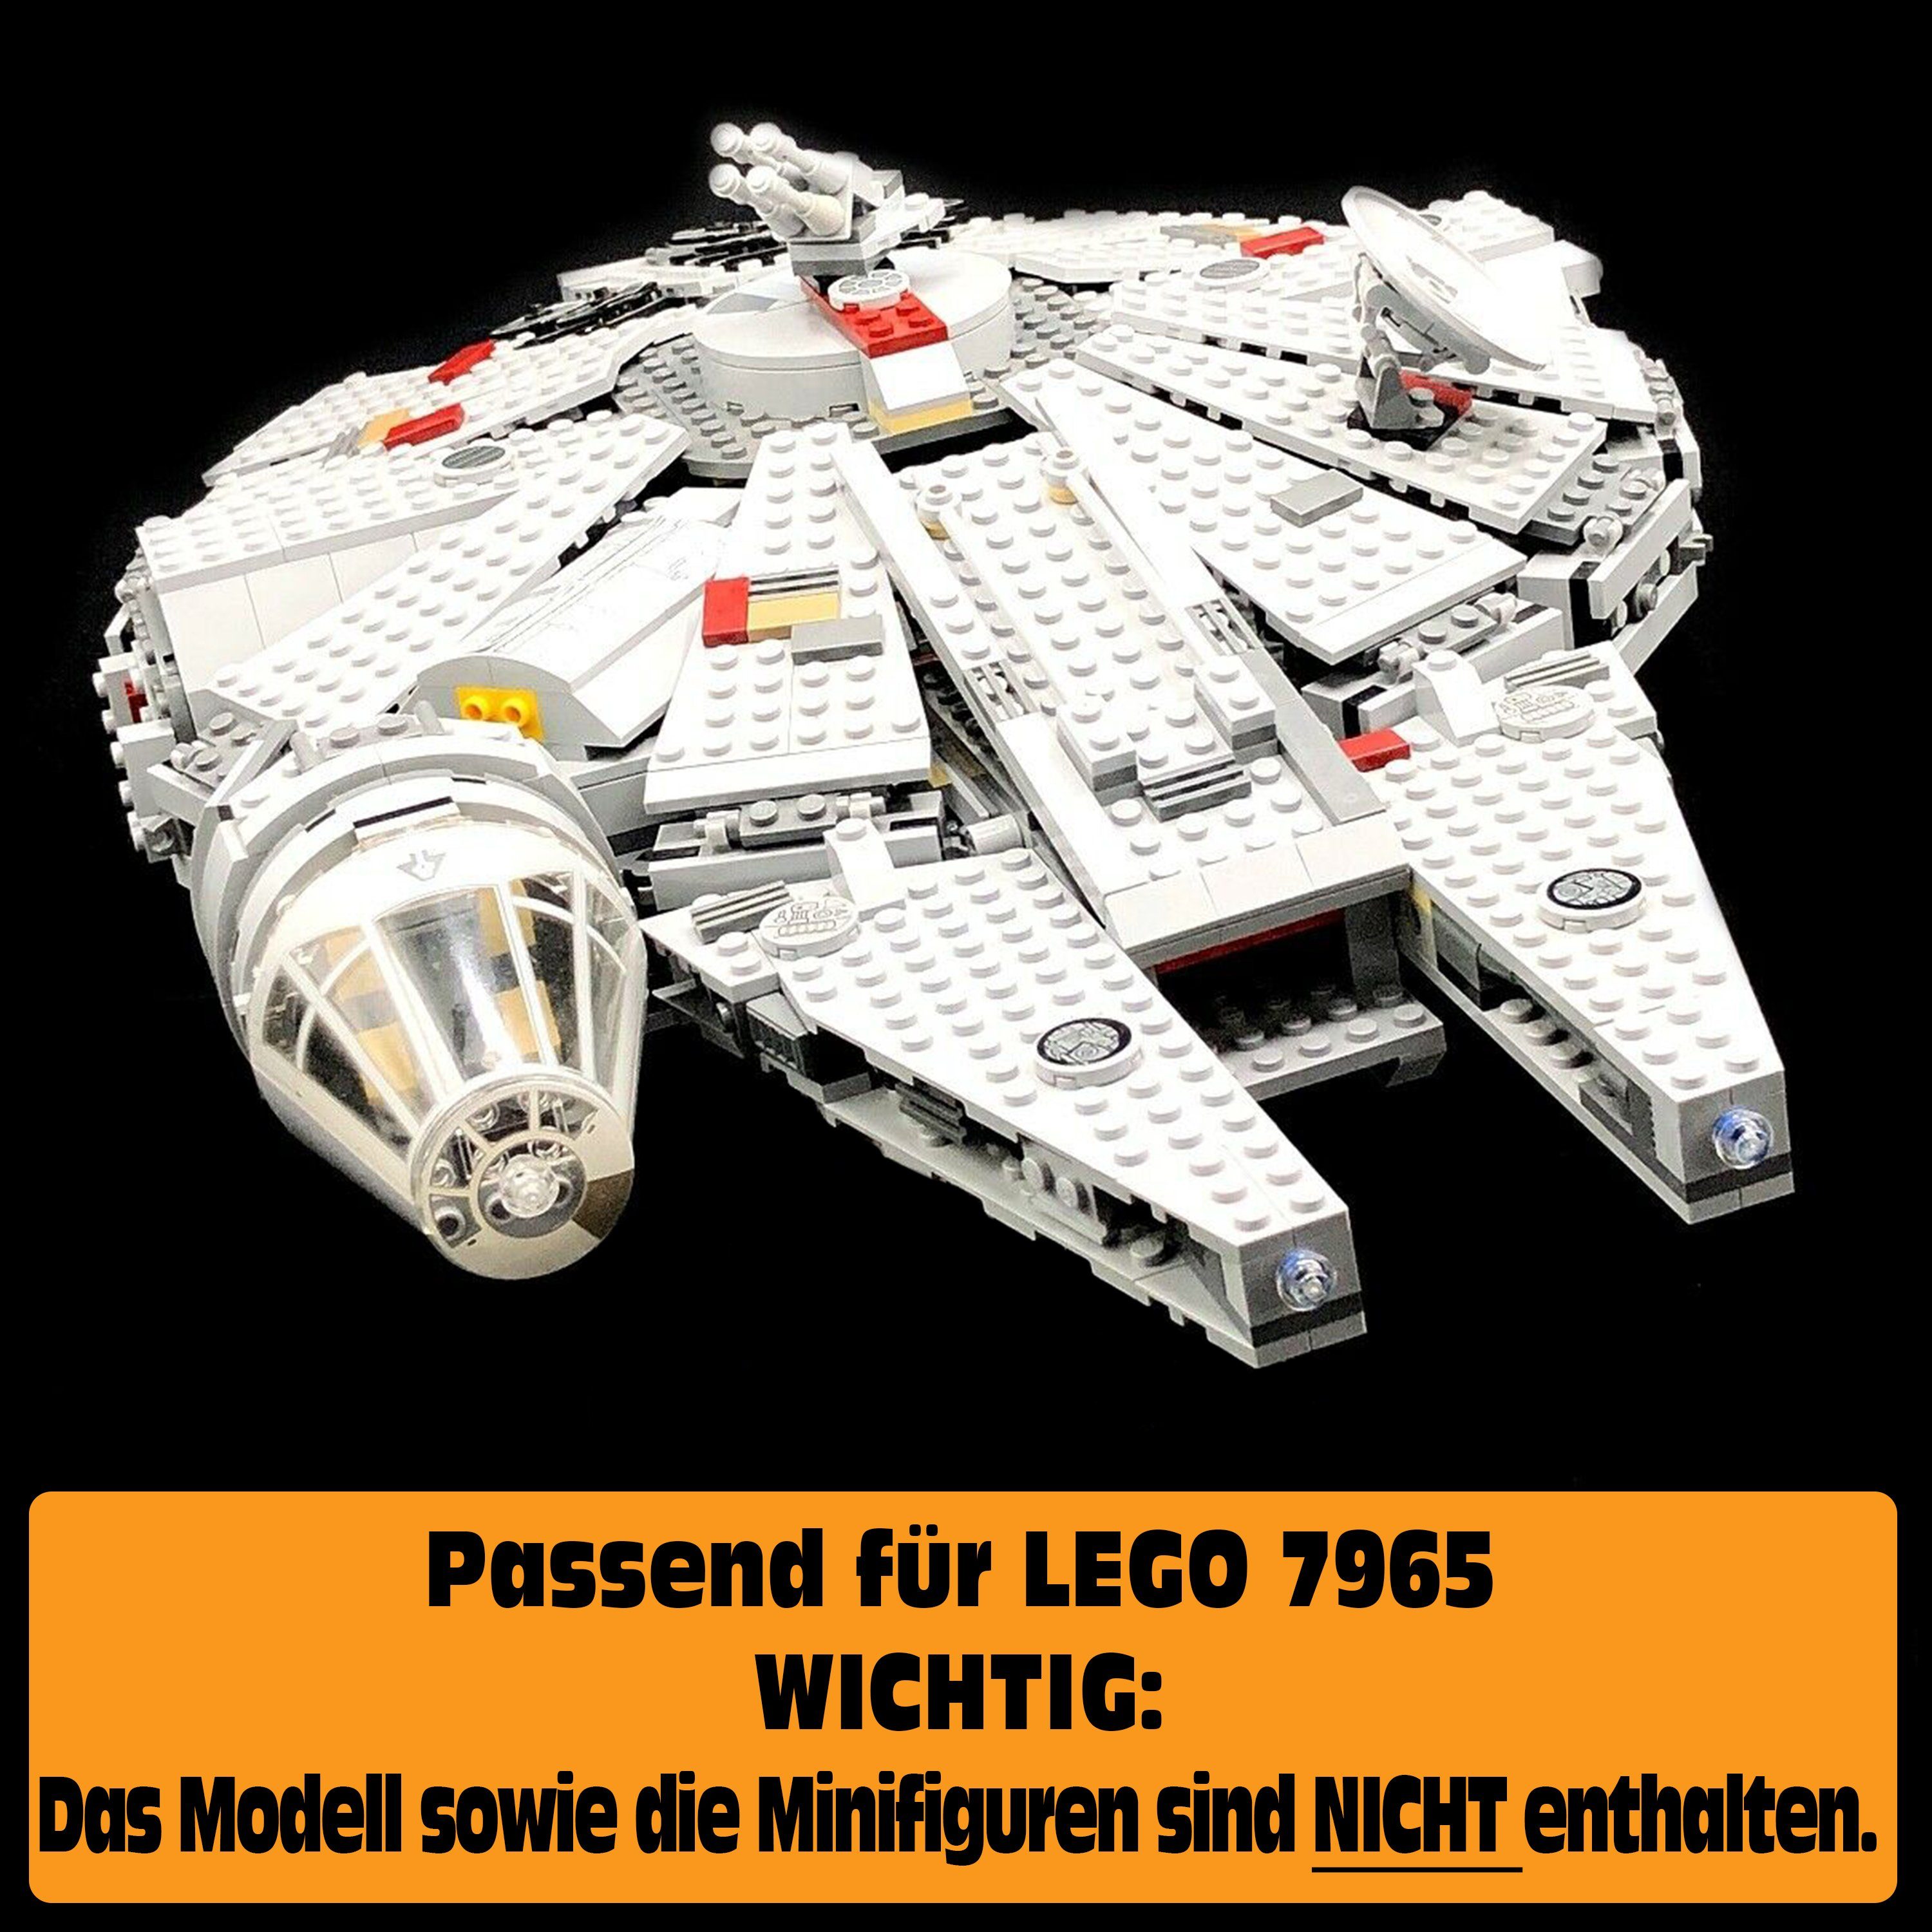 AREA17 für Display Stand selbst Falcon Germany in Millennium 100% Lego 7965 Acryl Made zusammenbauen), Standfuß (zum